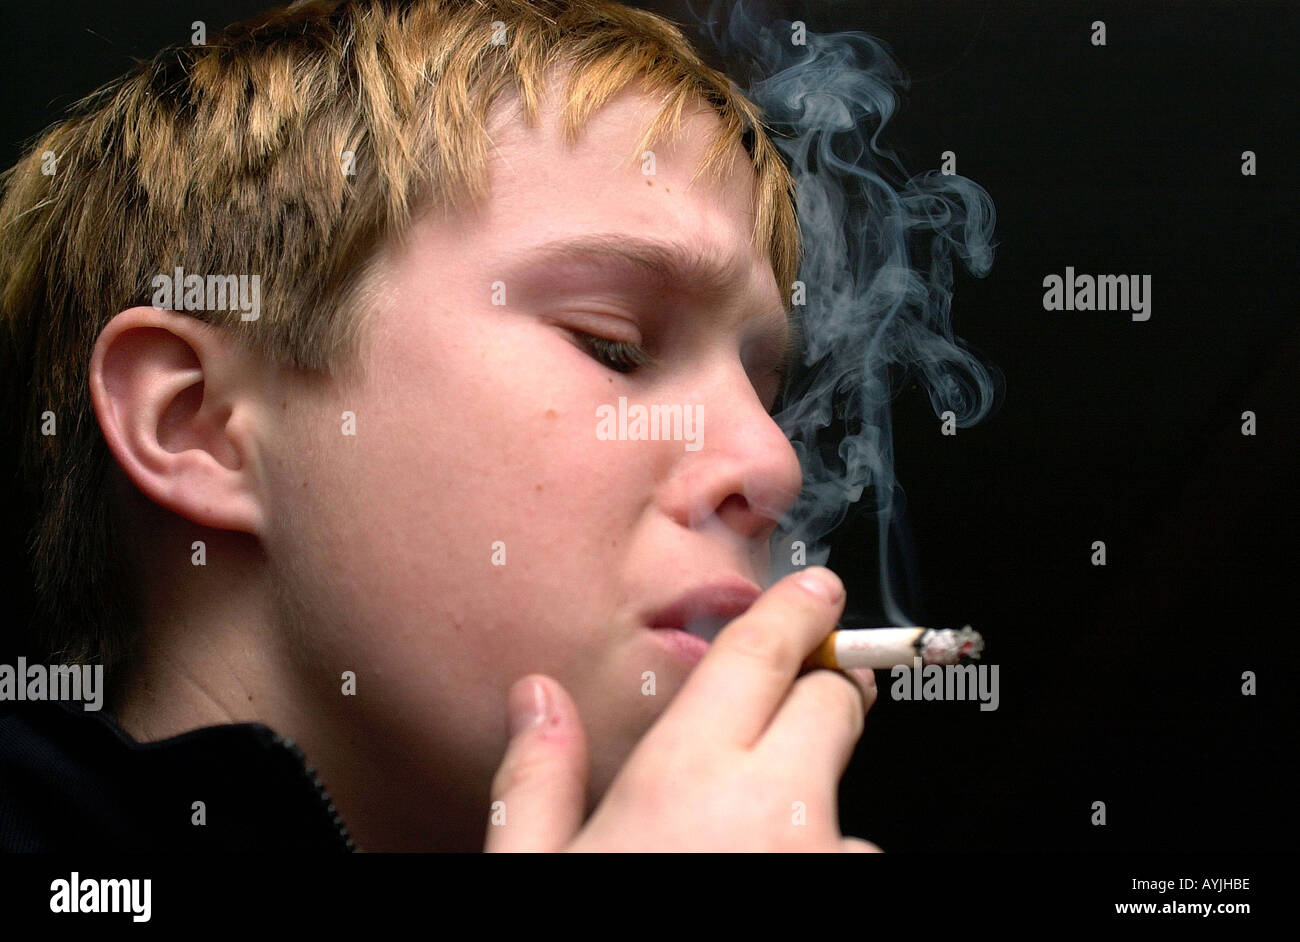 Ein Junge raucht eine Zigarette Stock Photo